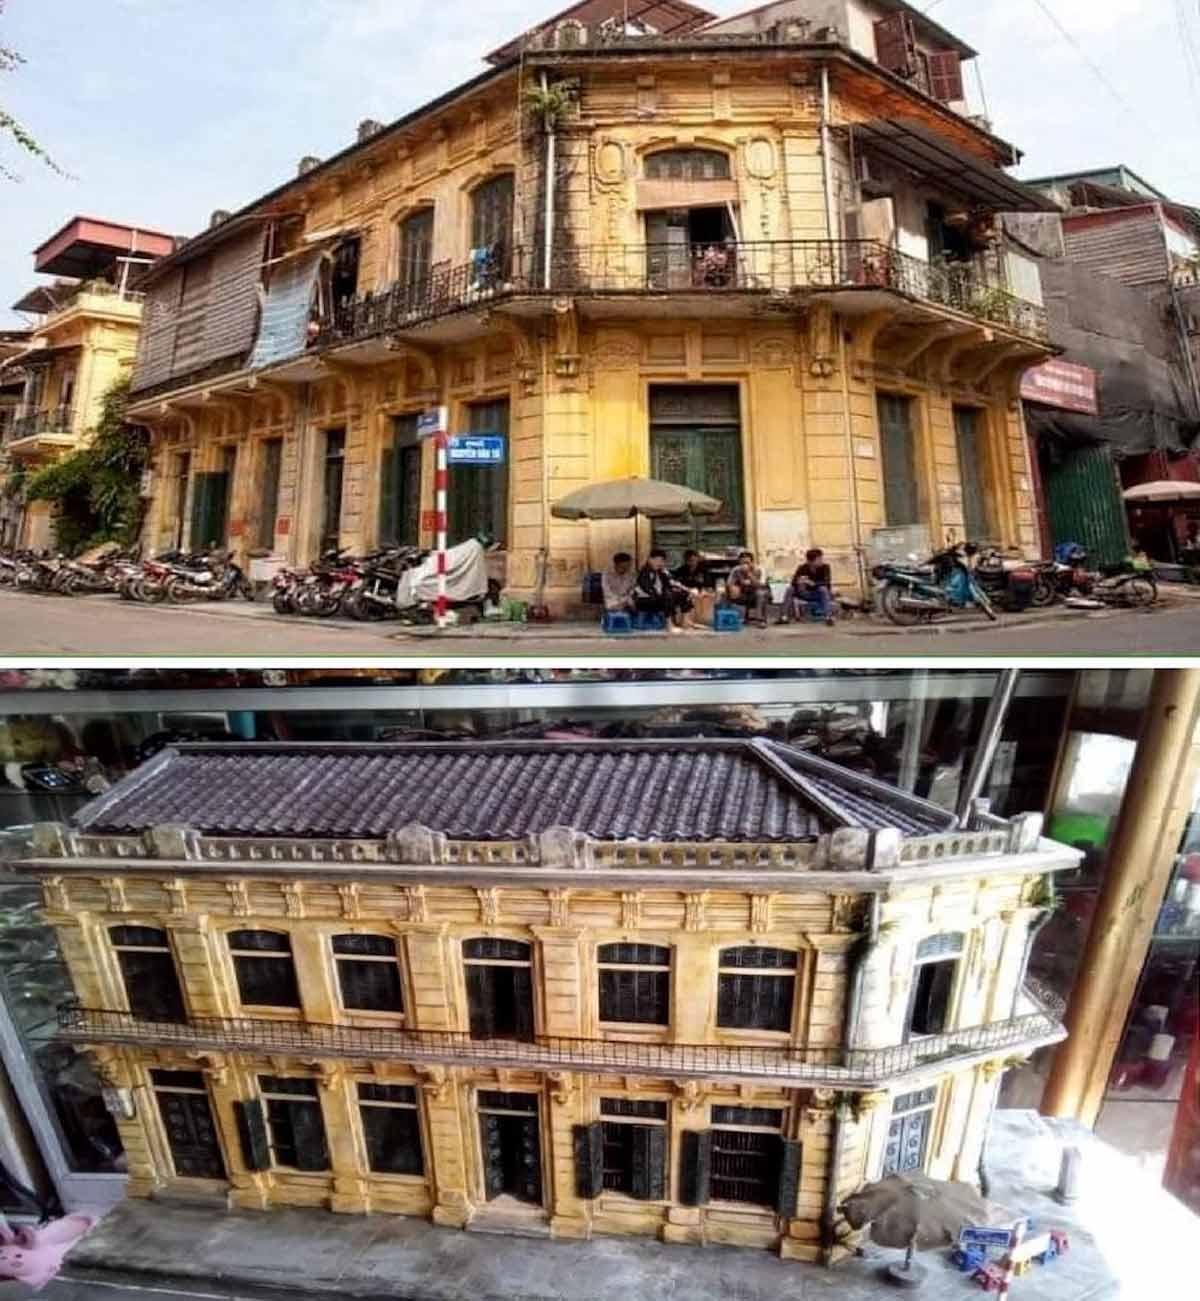 Chỉ qua bức ảnh chụp ngôi nhà ở ngã 3 phố Nguyễn Văn Tố giao Nguyễn Văn Bích (Hà Nội) (ảnh trên), anh Dũng đã tạo nên mô hình nhà (ảnh dưới) rất giống với nhà mẫu .